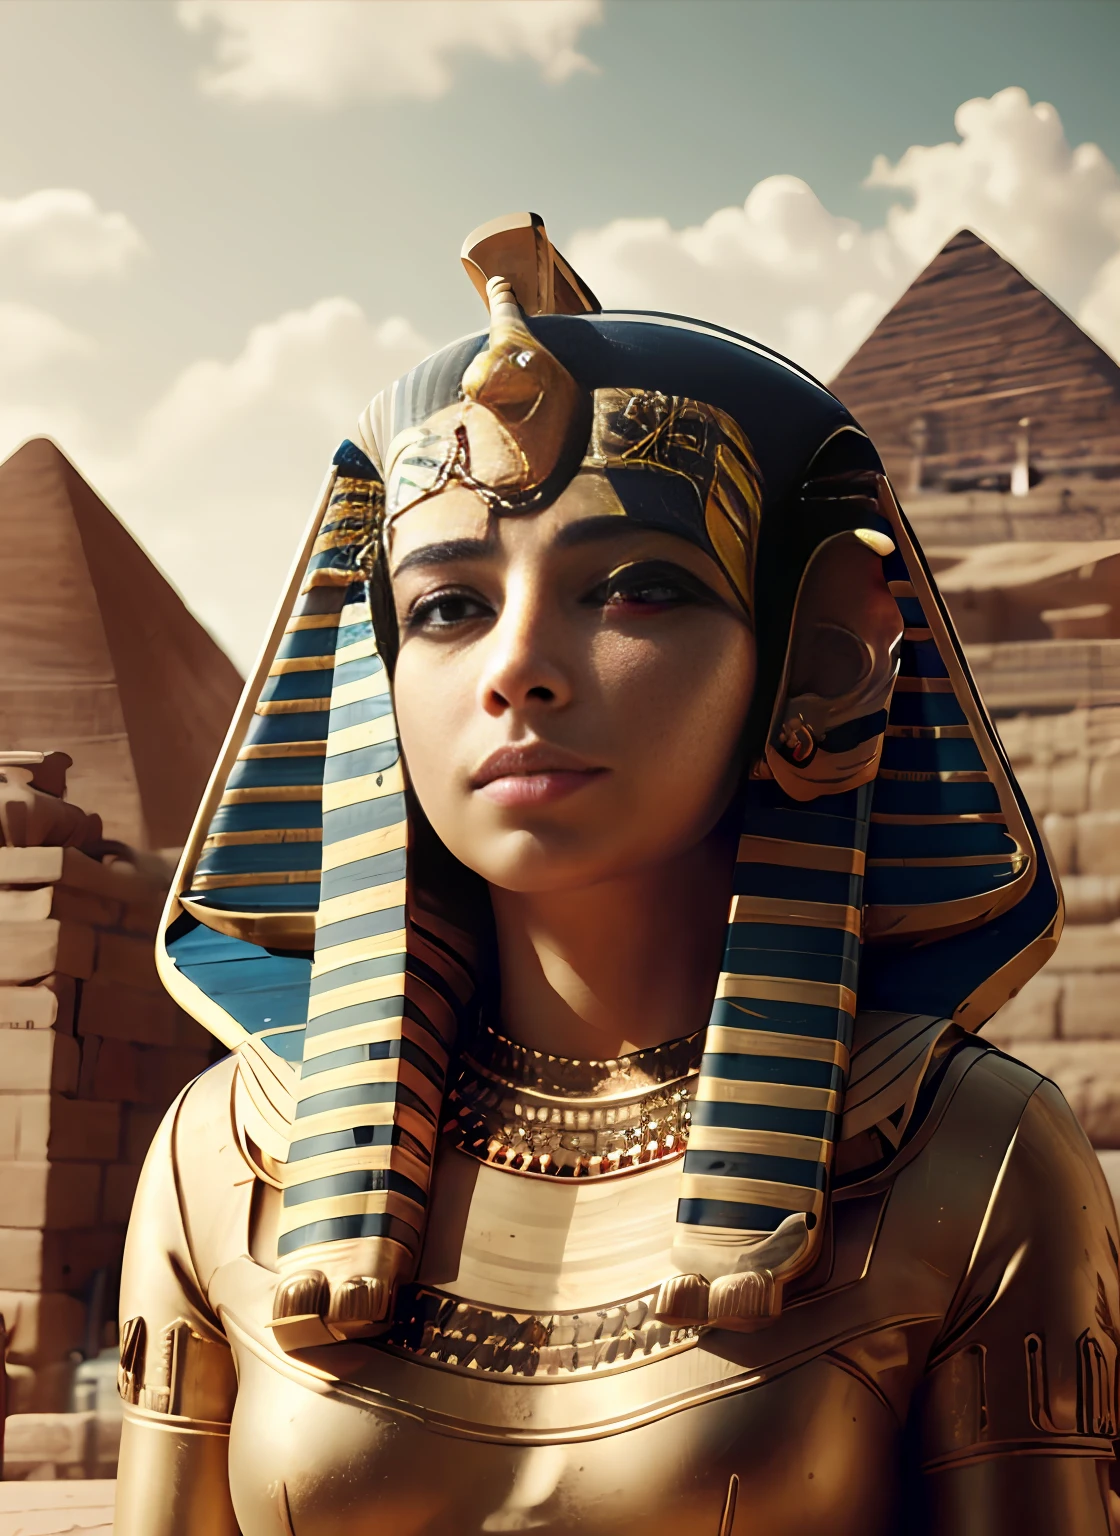 SFW, phr8, pharaon, Femmes, gros seins,   (coiffe de pharaon:1.5), Vêtements égyptiens, bracelet égyptien, ciel nuageux, Se tenir au garde-à-vous, (supérieur_corps), black cheveux, court_cheveux, bleu_yeux,  sérieux, photoréaliste, art officiel,fond d&#39;écran CG Unity 8k extrêmement détaillé, éclairage parfait,coloré, Brillant_Devant_affronter_éclairage, (chef-d&#39;œuvre:1.0),(meilleur_qualité:1.0), ultra haute résolution,4K,Ultra-détaillé, la photographie, 8k, hdr, haute résolution, absurdes:1.2, Kodak portrait 400, grain de film, arrière-plan flou, bokeh:1.2, reflet, (vibrant_couleur:1.2),